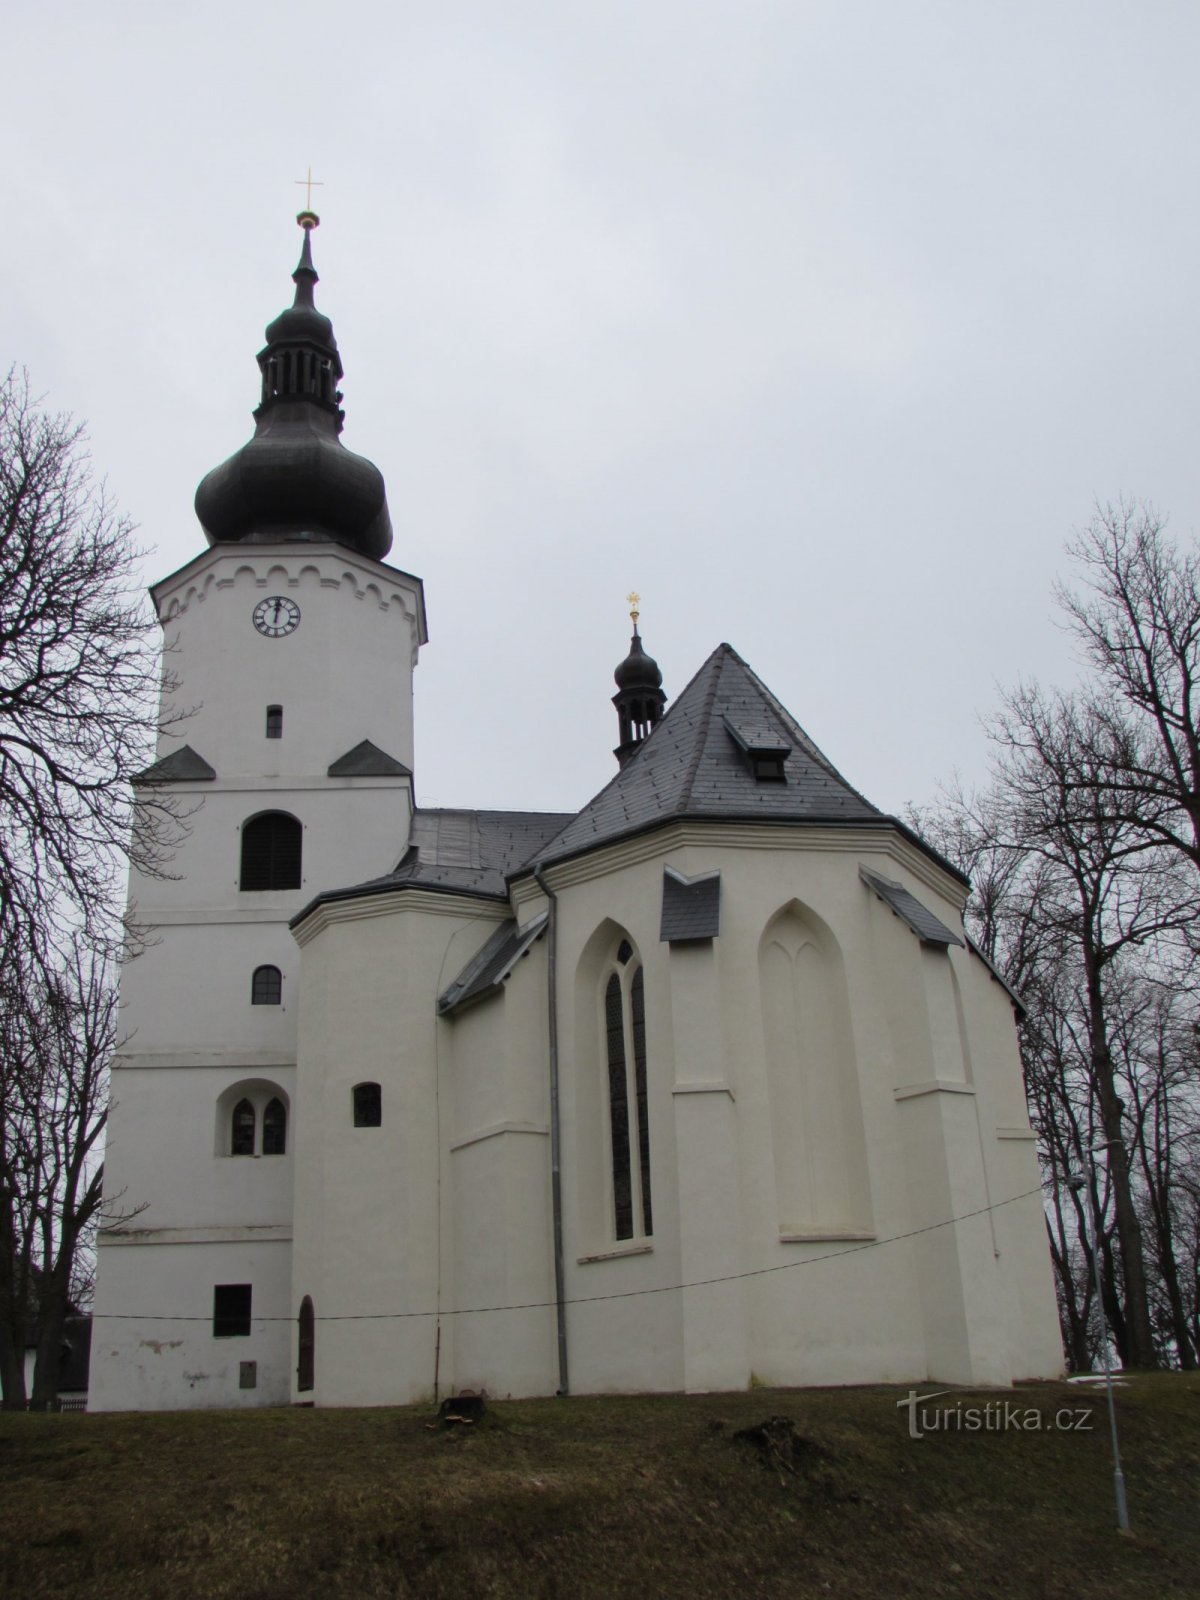 Jindřichovice, biserica Sf. Martin